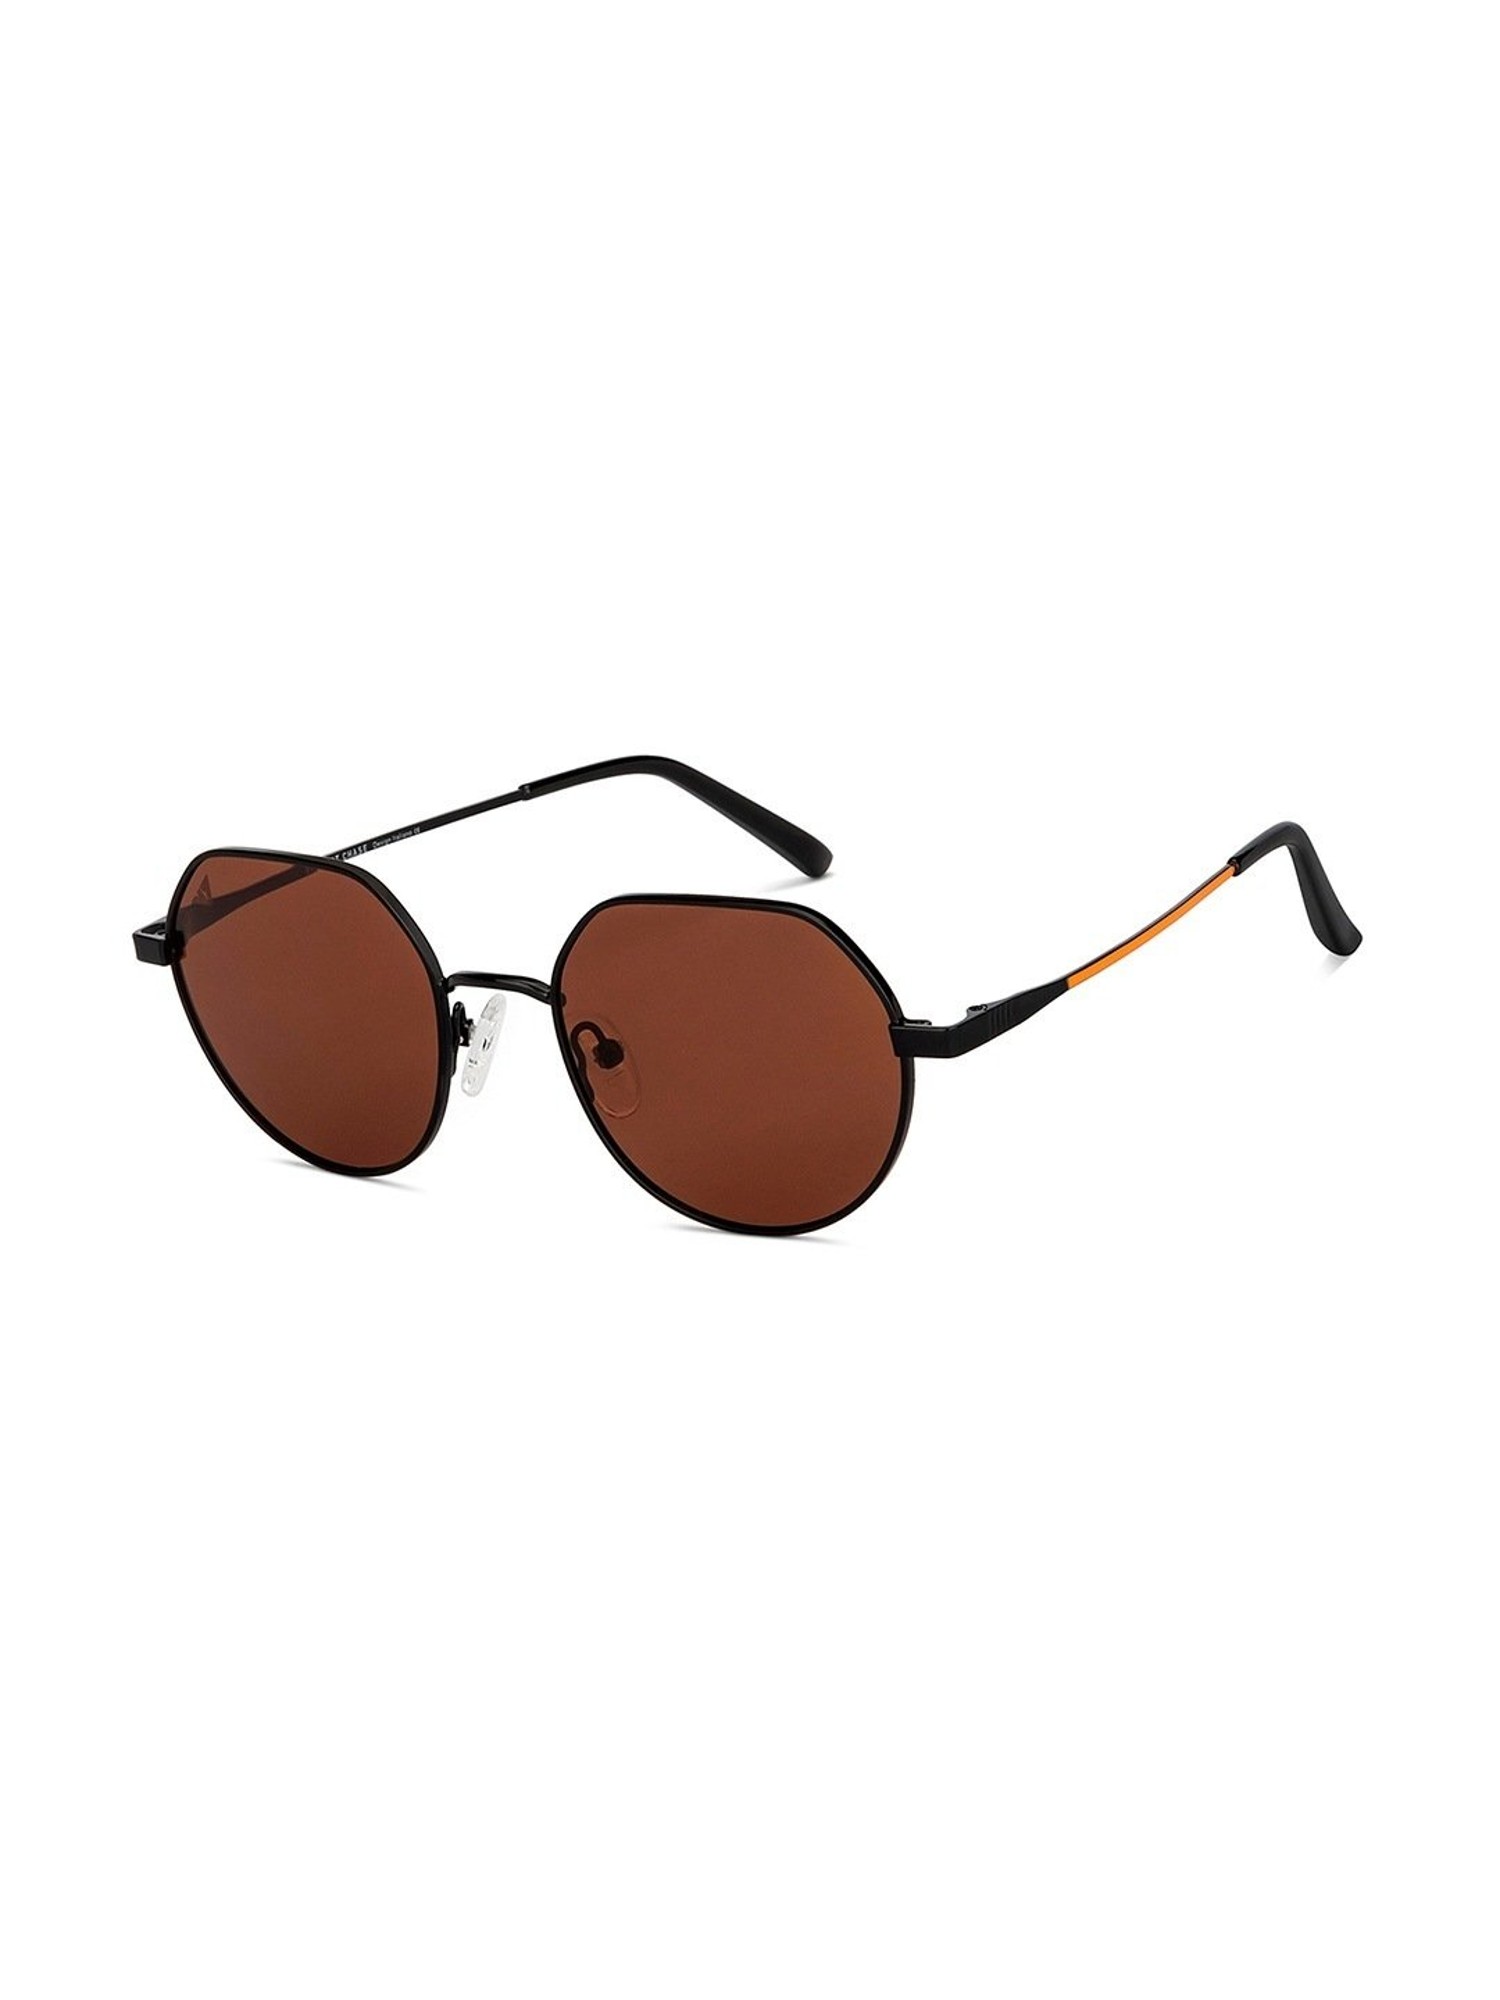 Buy VINCENT CHASE by Lenskart Wayfarer Sunglasses Grey For Men & Women  Online @ Best Prices in India | Flipkart.com